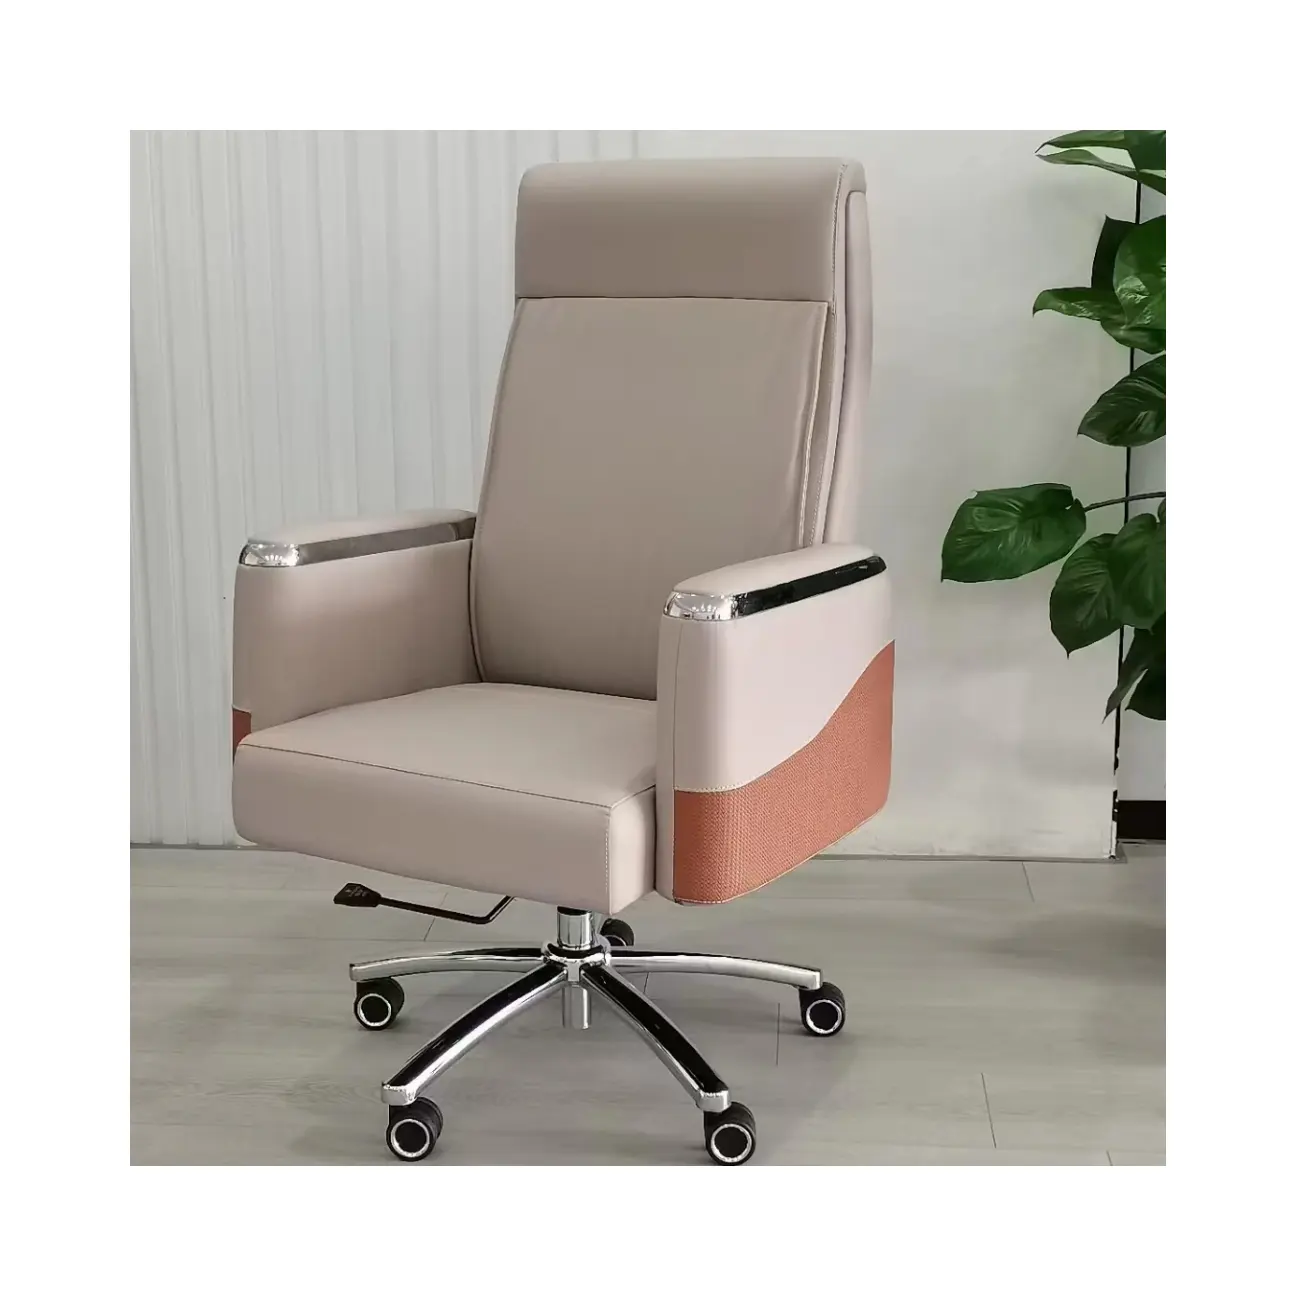 كرسي مكتب جلدي بتصميم فاخر وعصري أثاث مكتبي كرسي دوار مريح كرسي تنفيذي